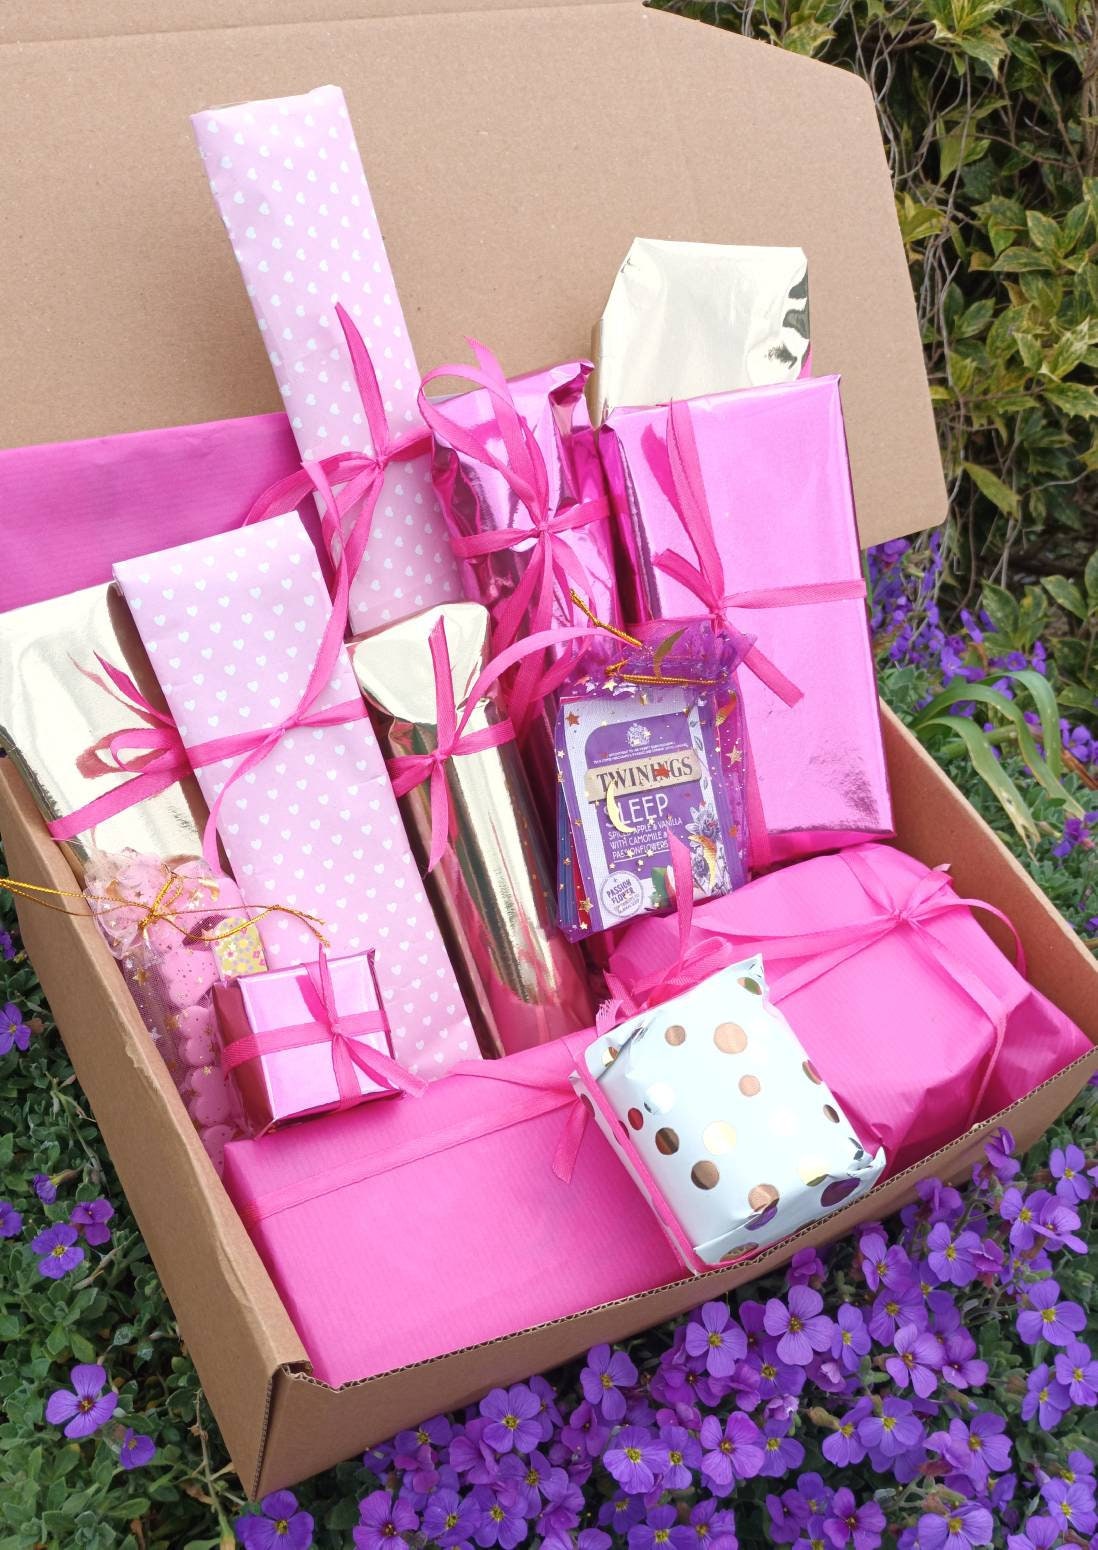  TheraBox Caja misteriosa con 8 productos de bienestar y cuidado  personal, caja misteriosa sorpresa que las mujeres aman como regalo de  cuidado personal para cada ocasión : Belleza y Cuidado Personal